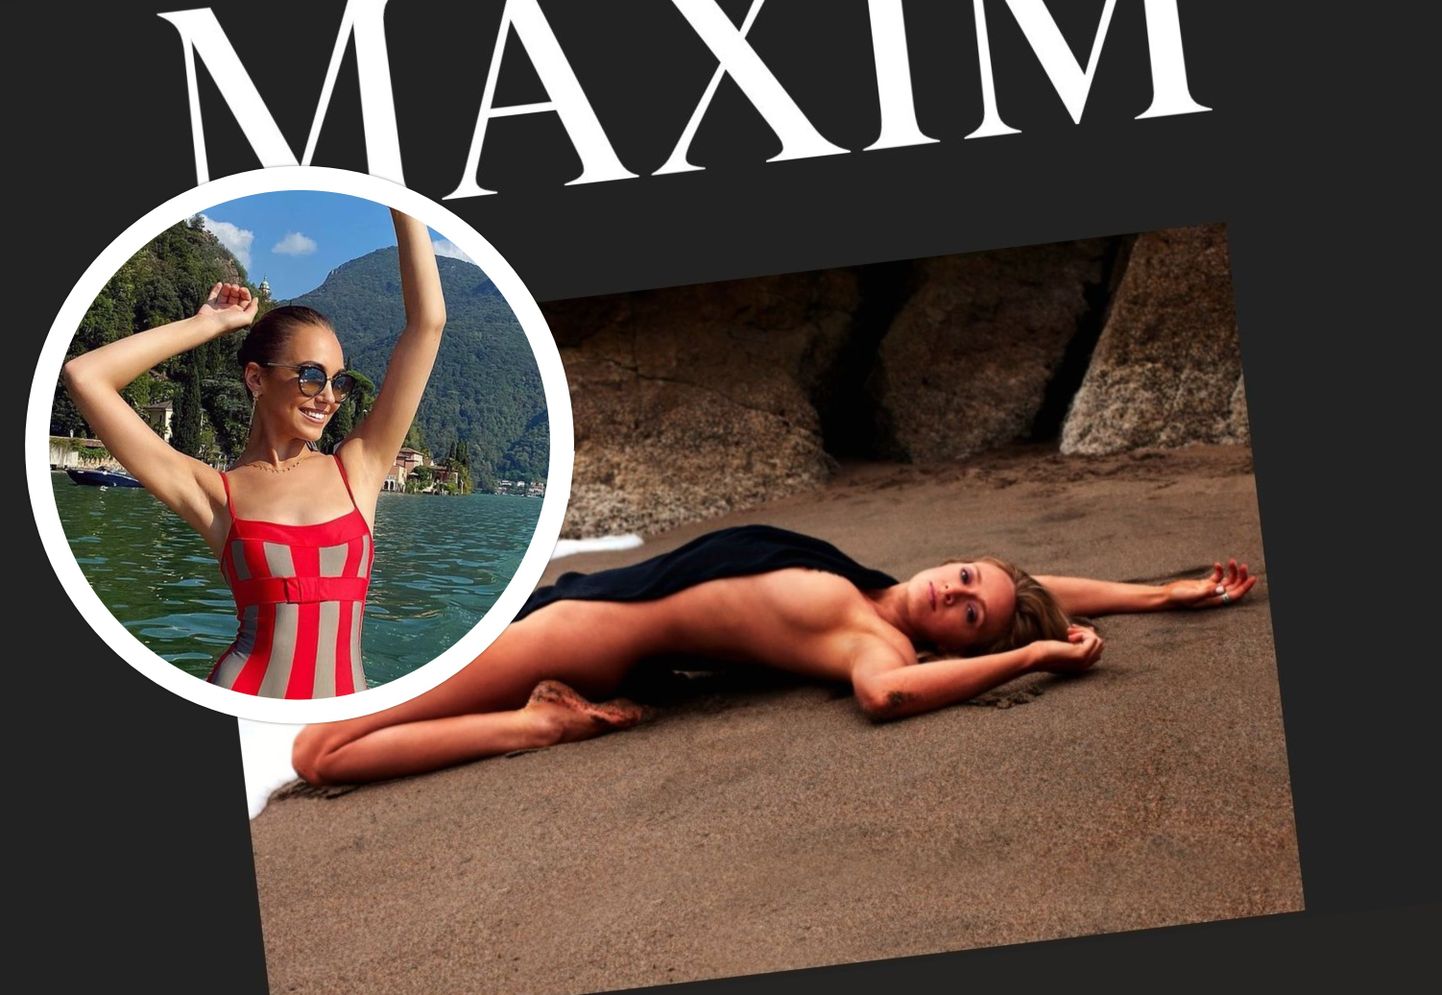 Конкурс австралийской версии мужского журнала Maxim выиграла Таная Пек